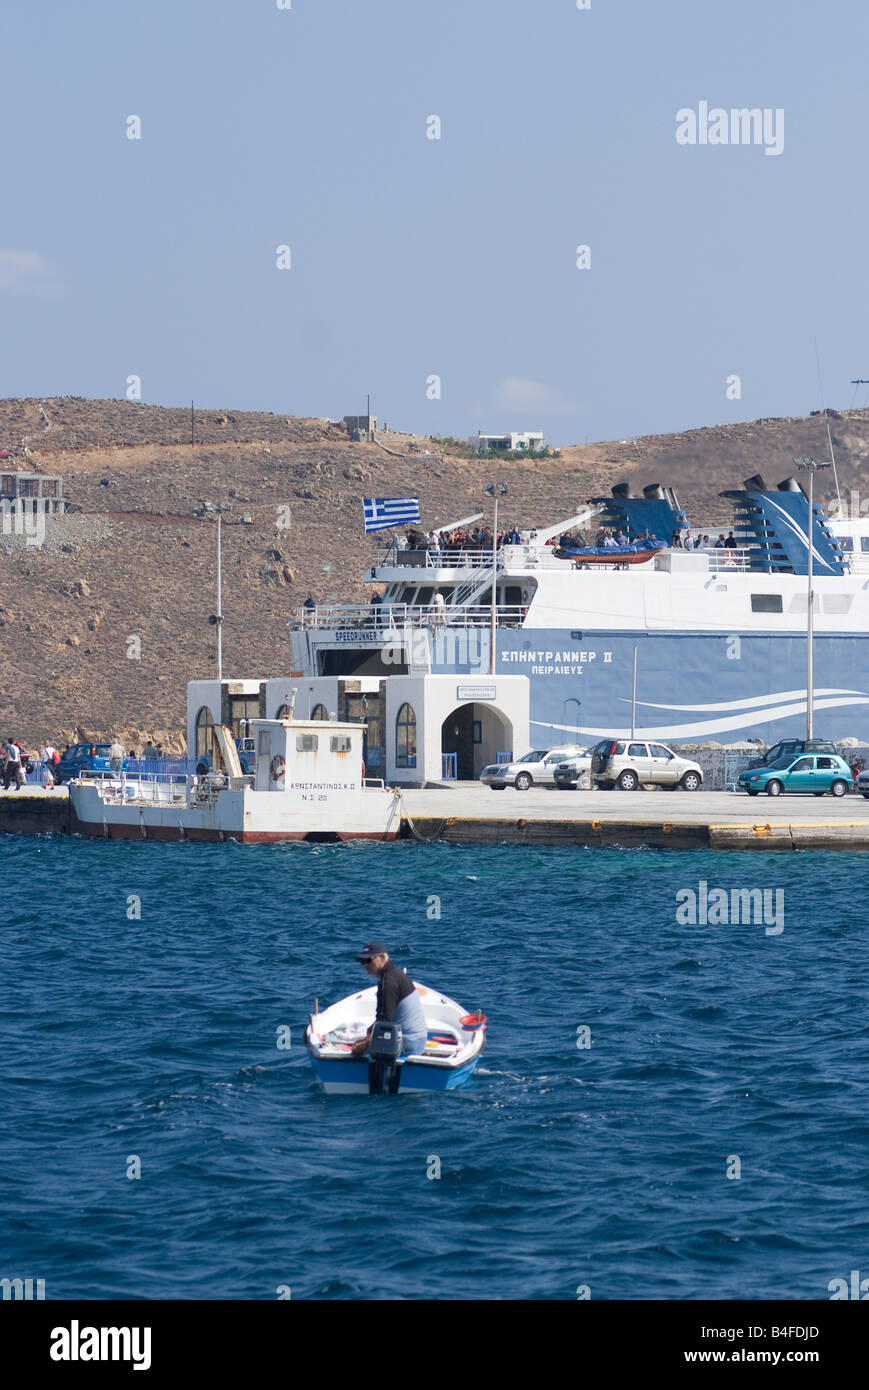 La Aegean Speed Lines Traghetto veloce Speedrunner II attraccata a Livadi comune terminale sull isola di Serifos Cicladi Grecia Foto Stock